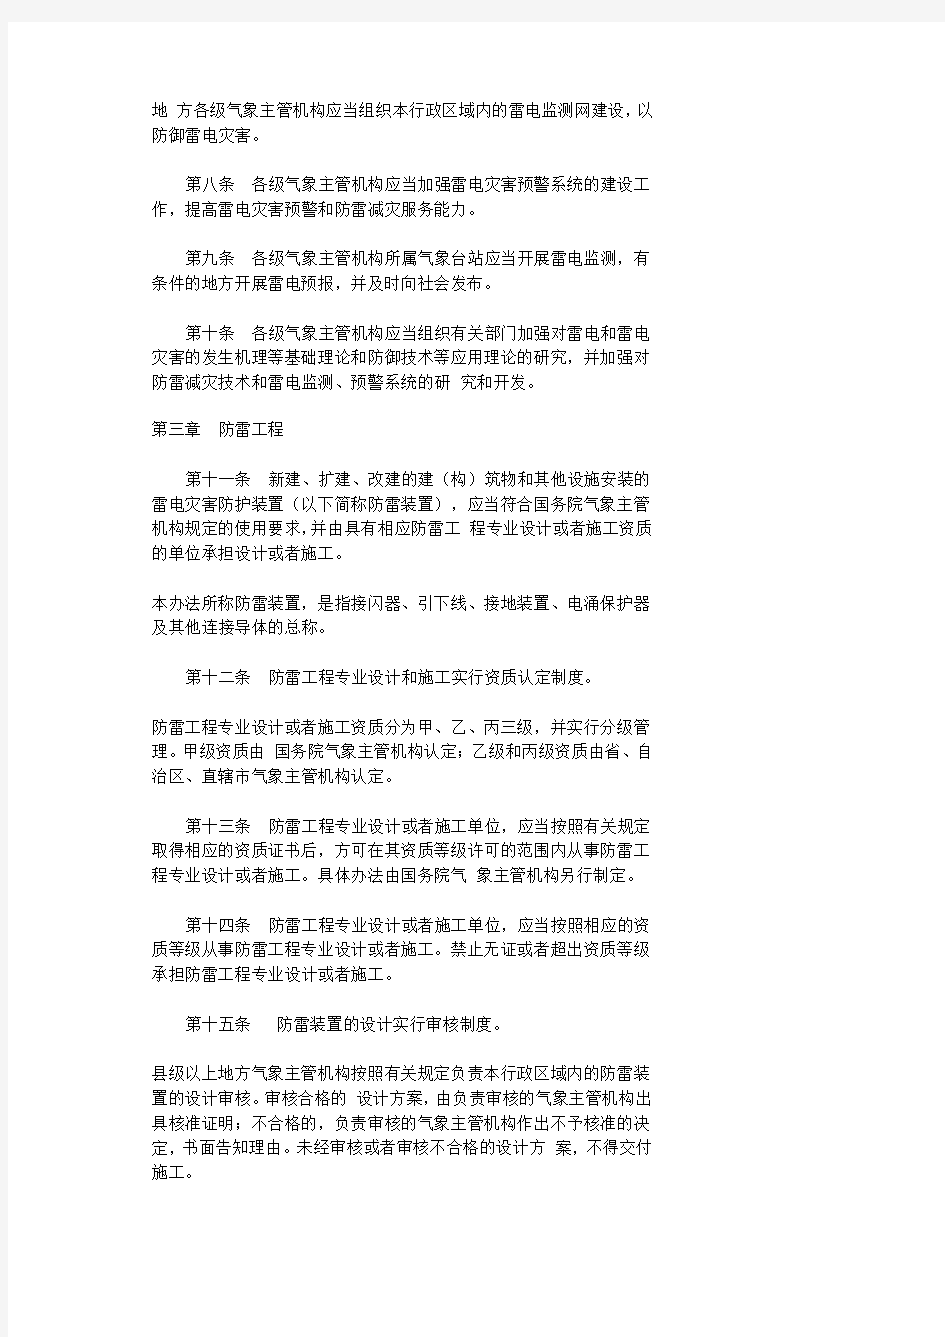 中国气象局第8号令--防雷减灾令